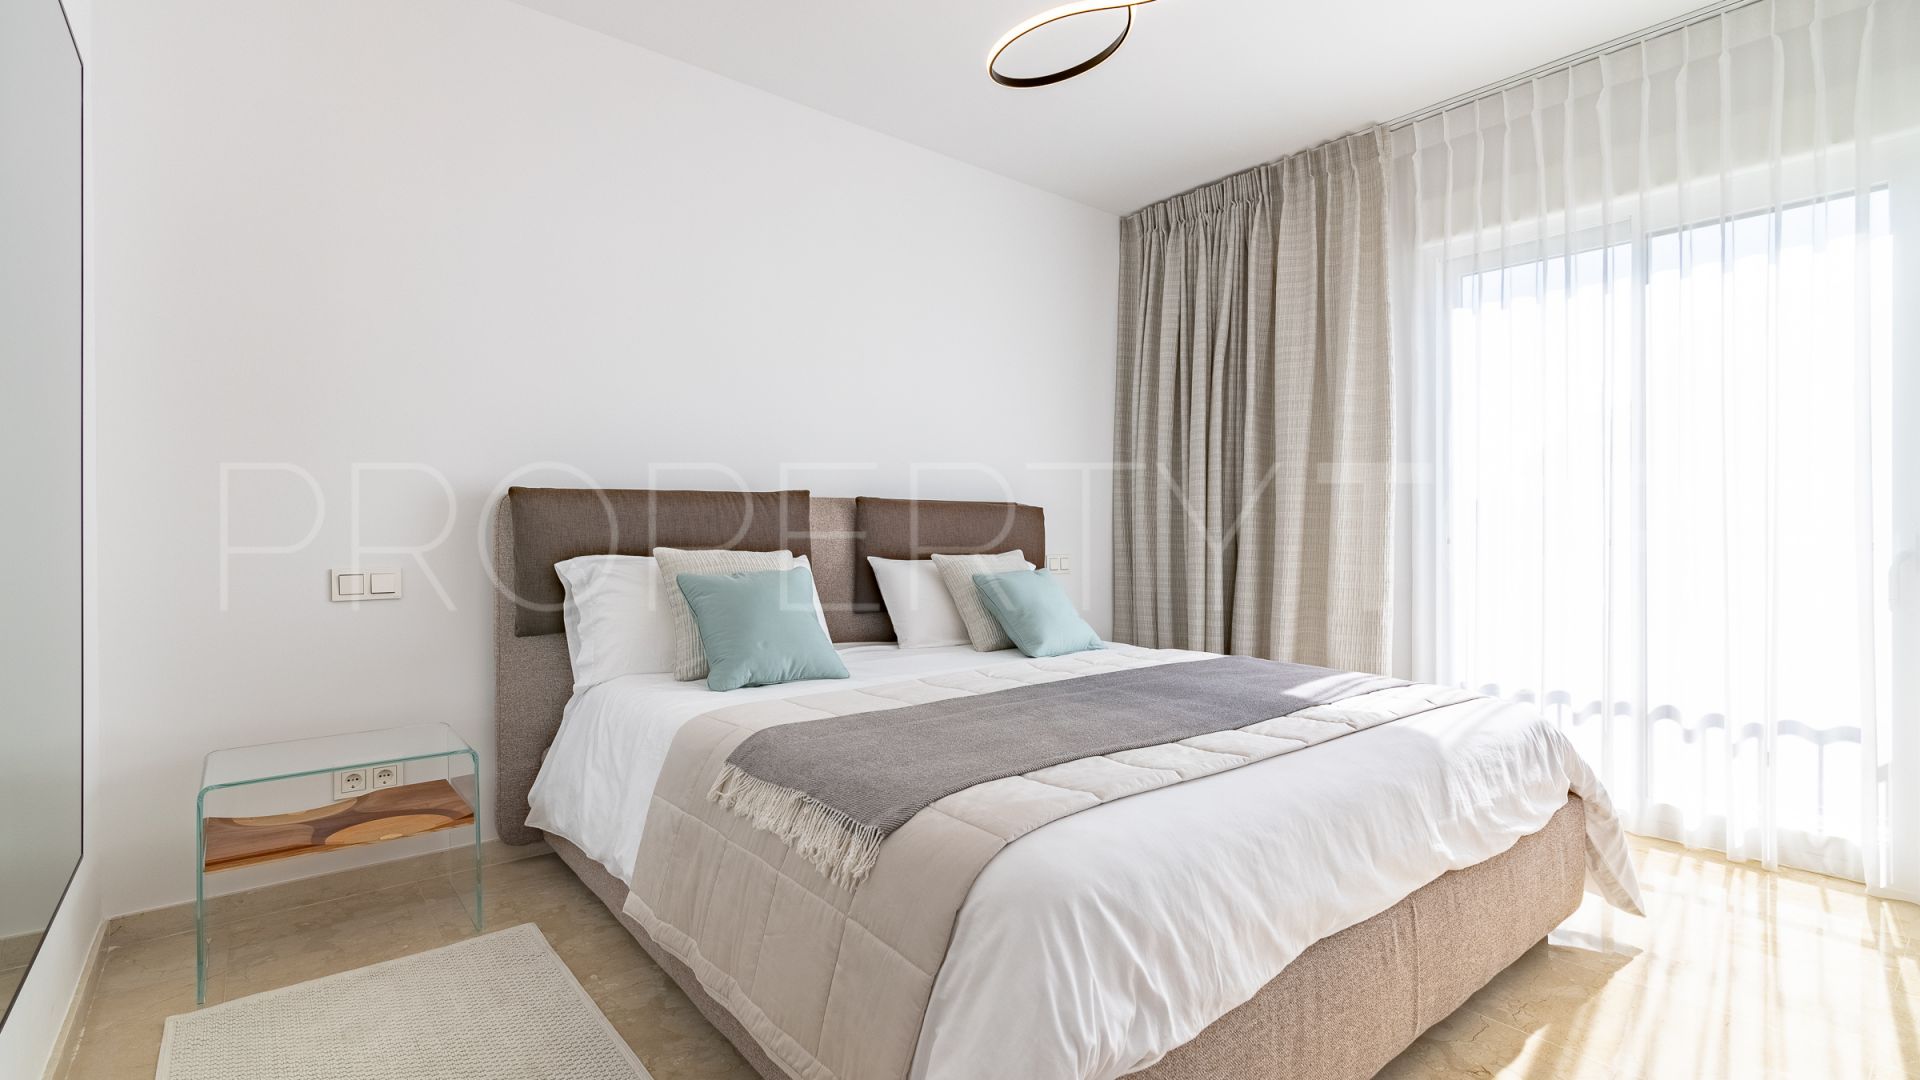 Buy Coto Real II 3 bedrooms duplex